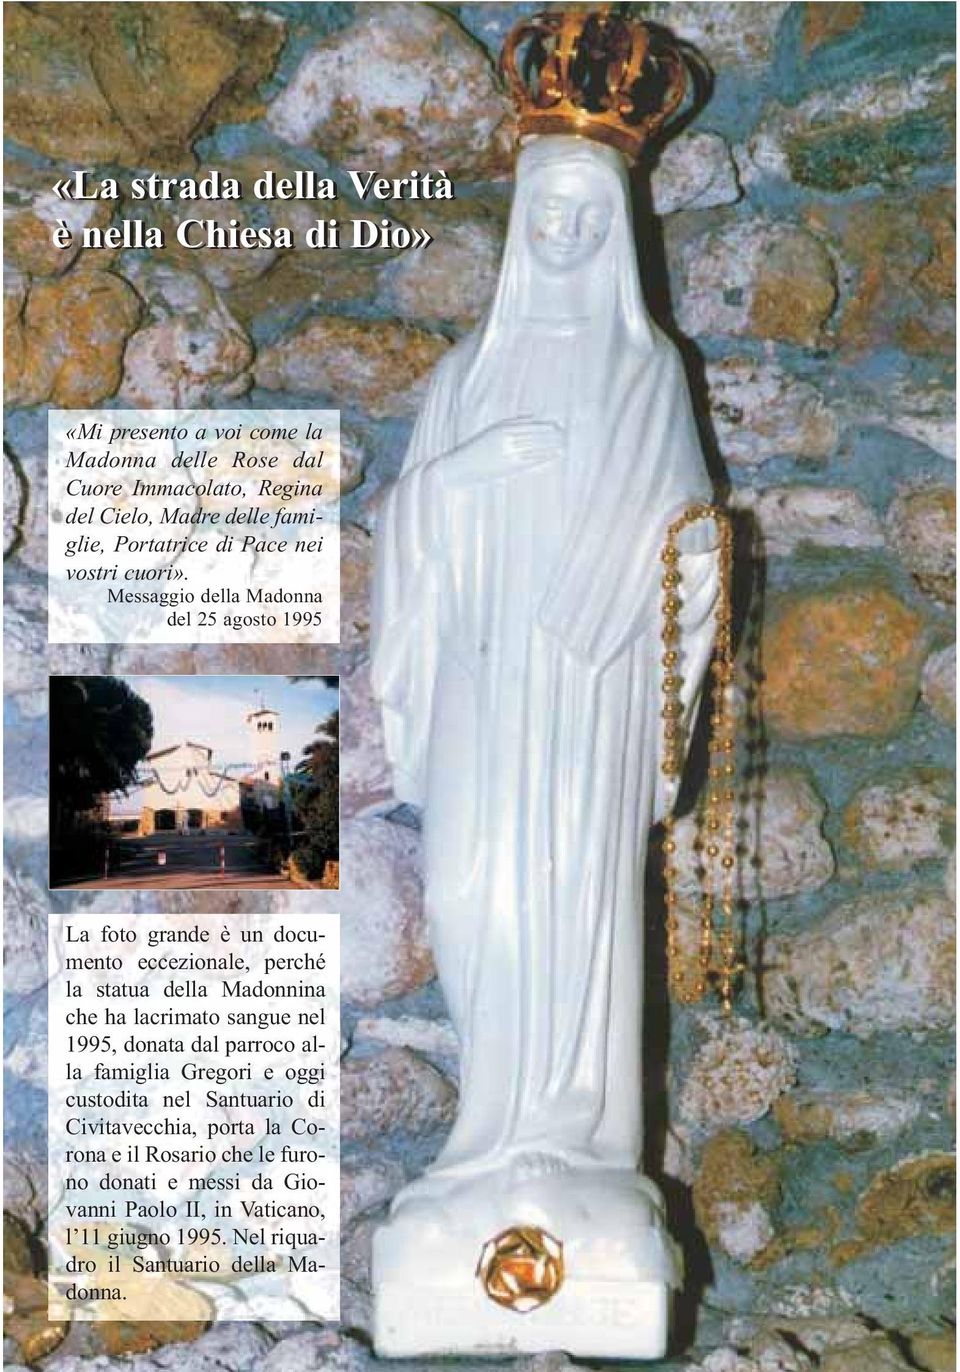 del 25 agosto 1995 La foto grande è un documento eccezionale, perché la statua della Madonnina che ha lacrimato sangue nel 1995, donata dal